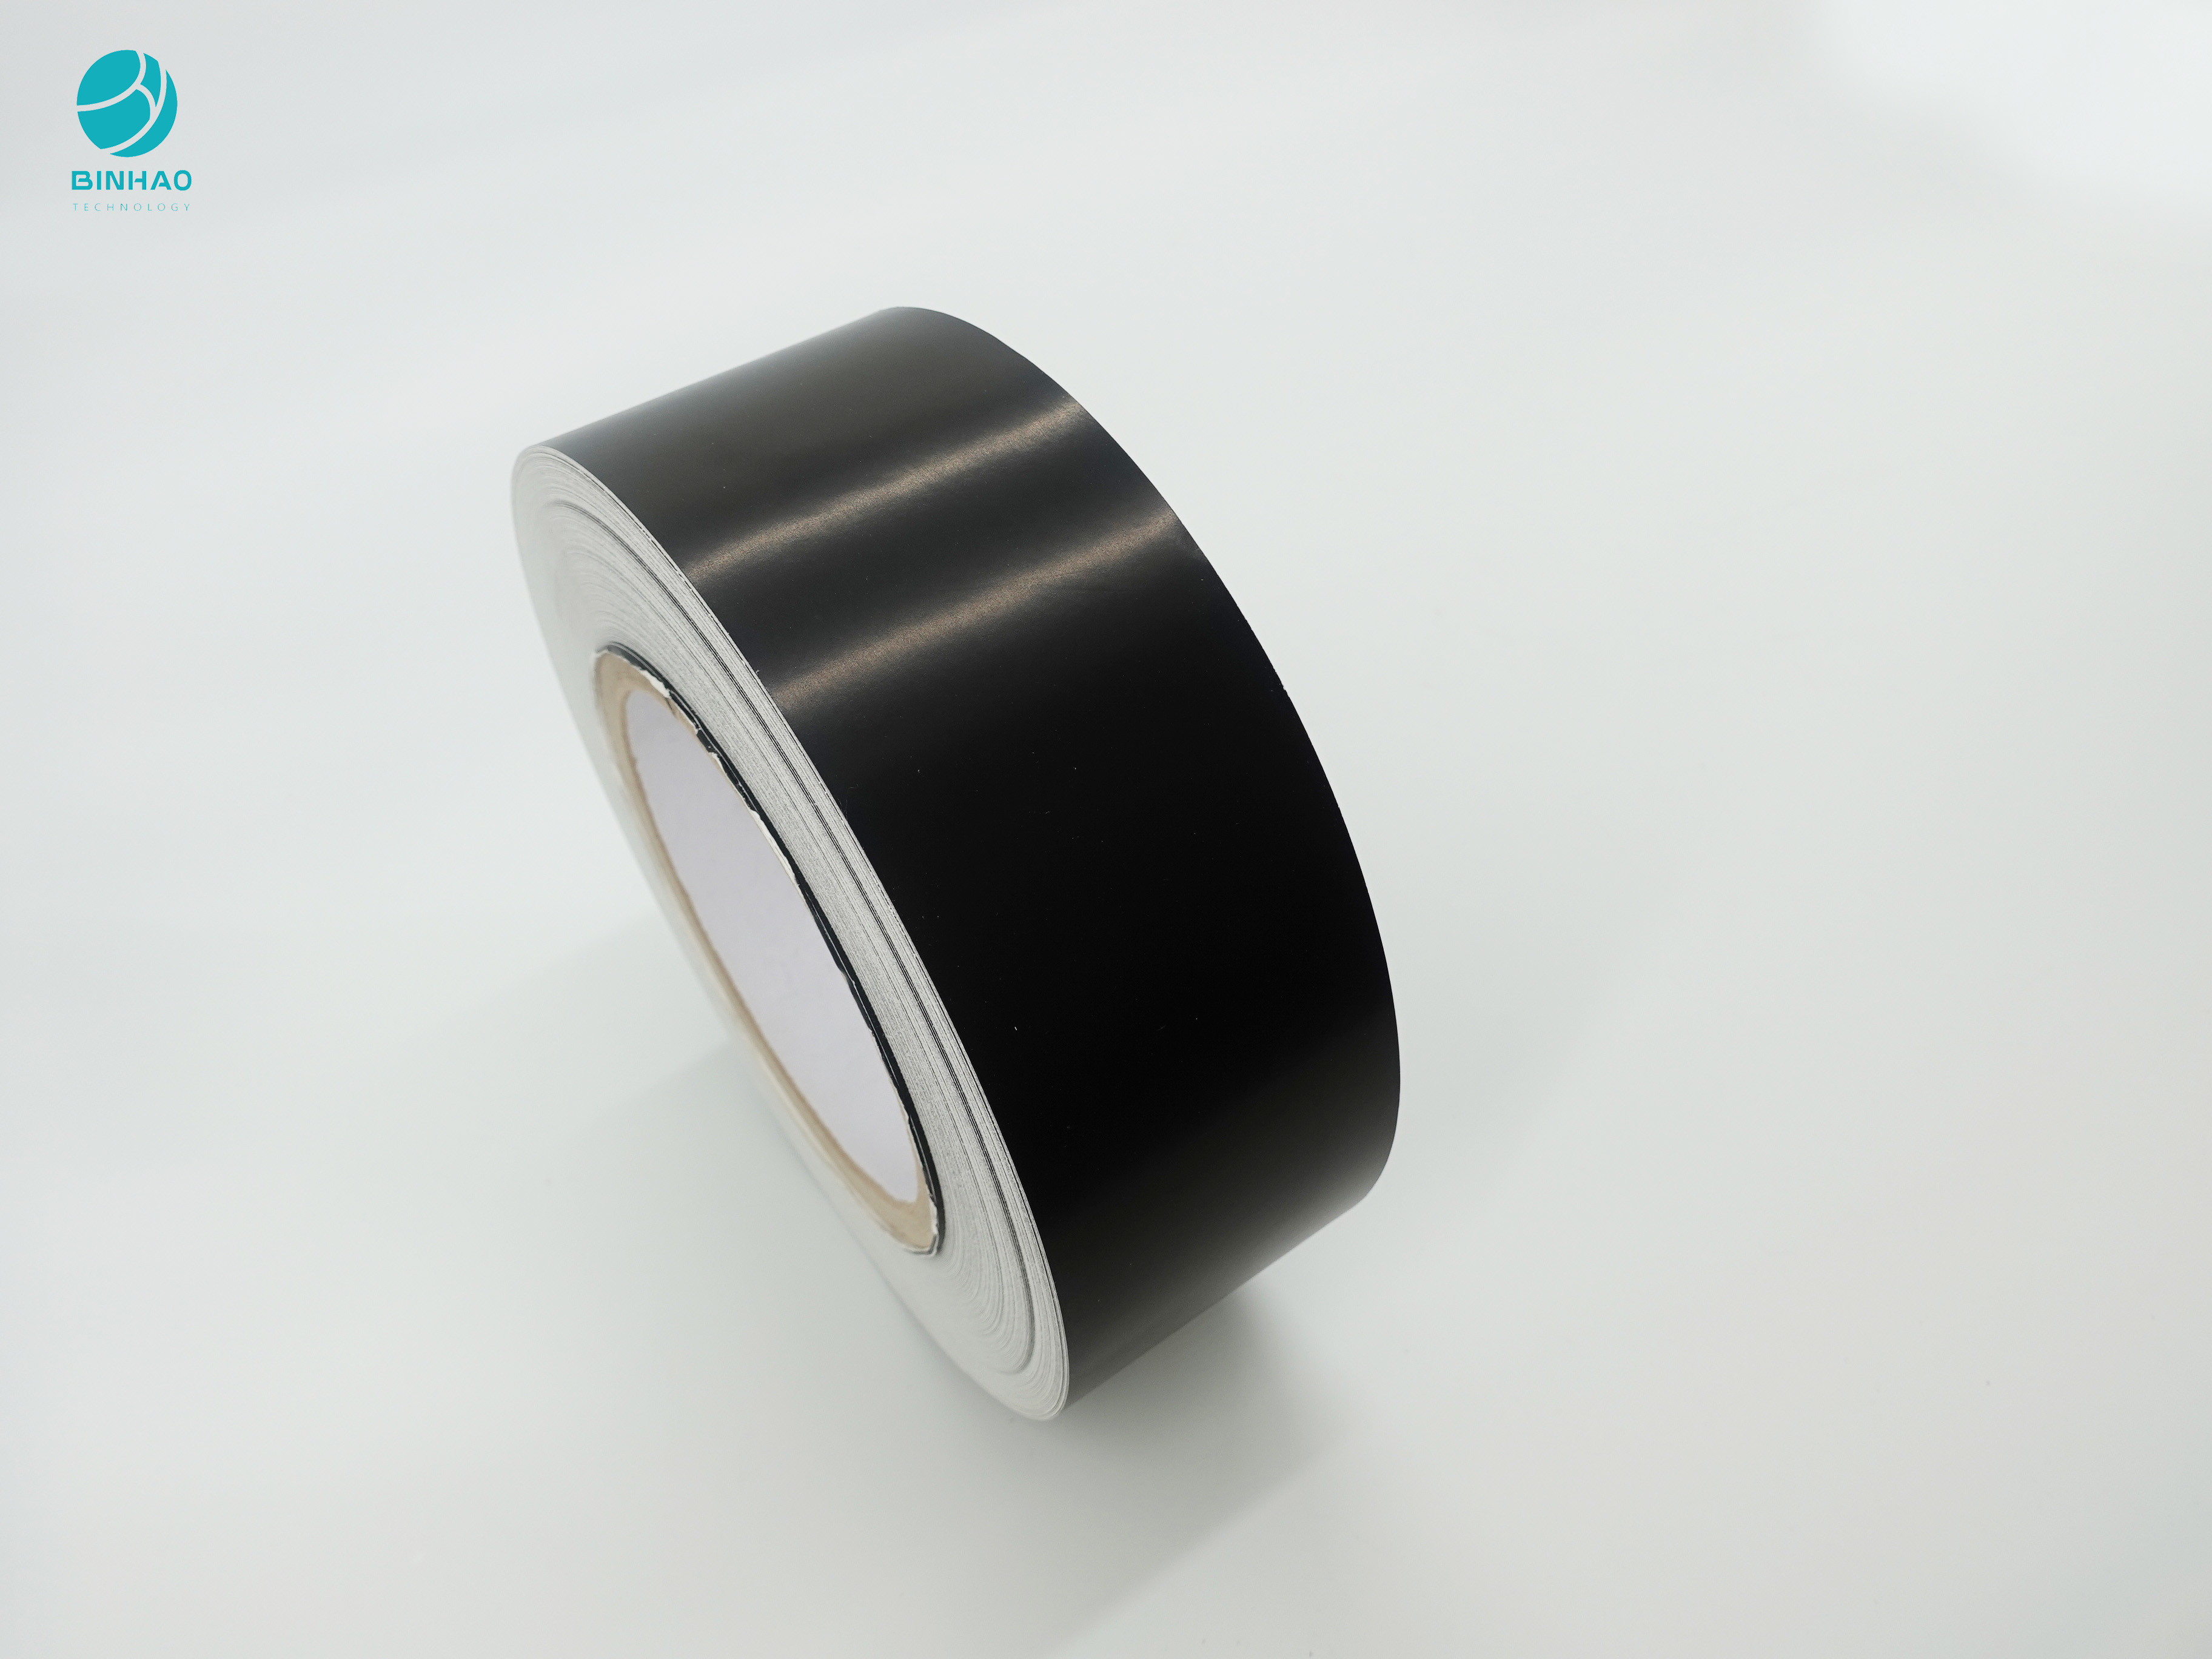 Μαύρο ντυμένο χαρτονένιο τσιγάρο SBS που συσκευάζει το εσωτερικό πλαίσιο με το μέγεθος συνήθειας